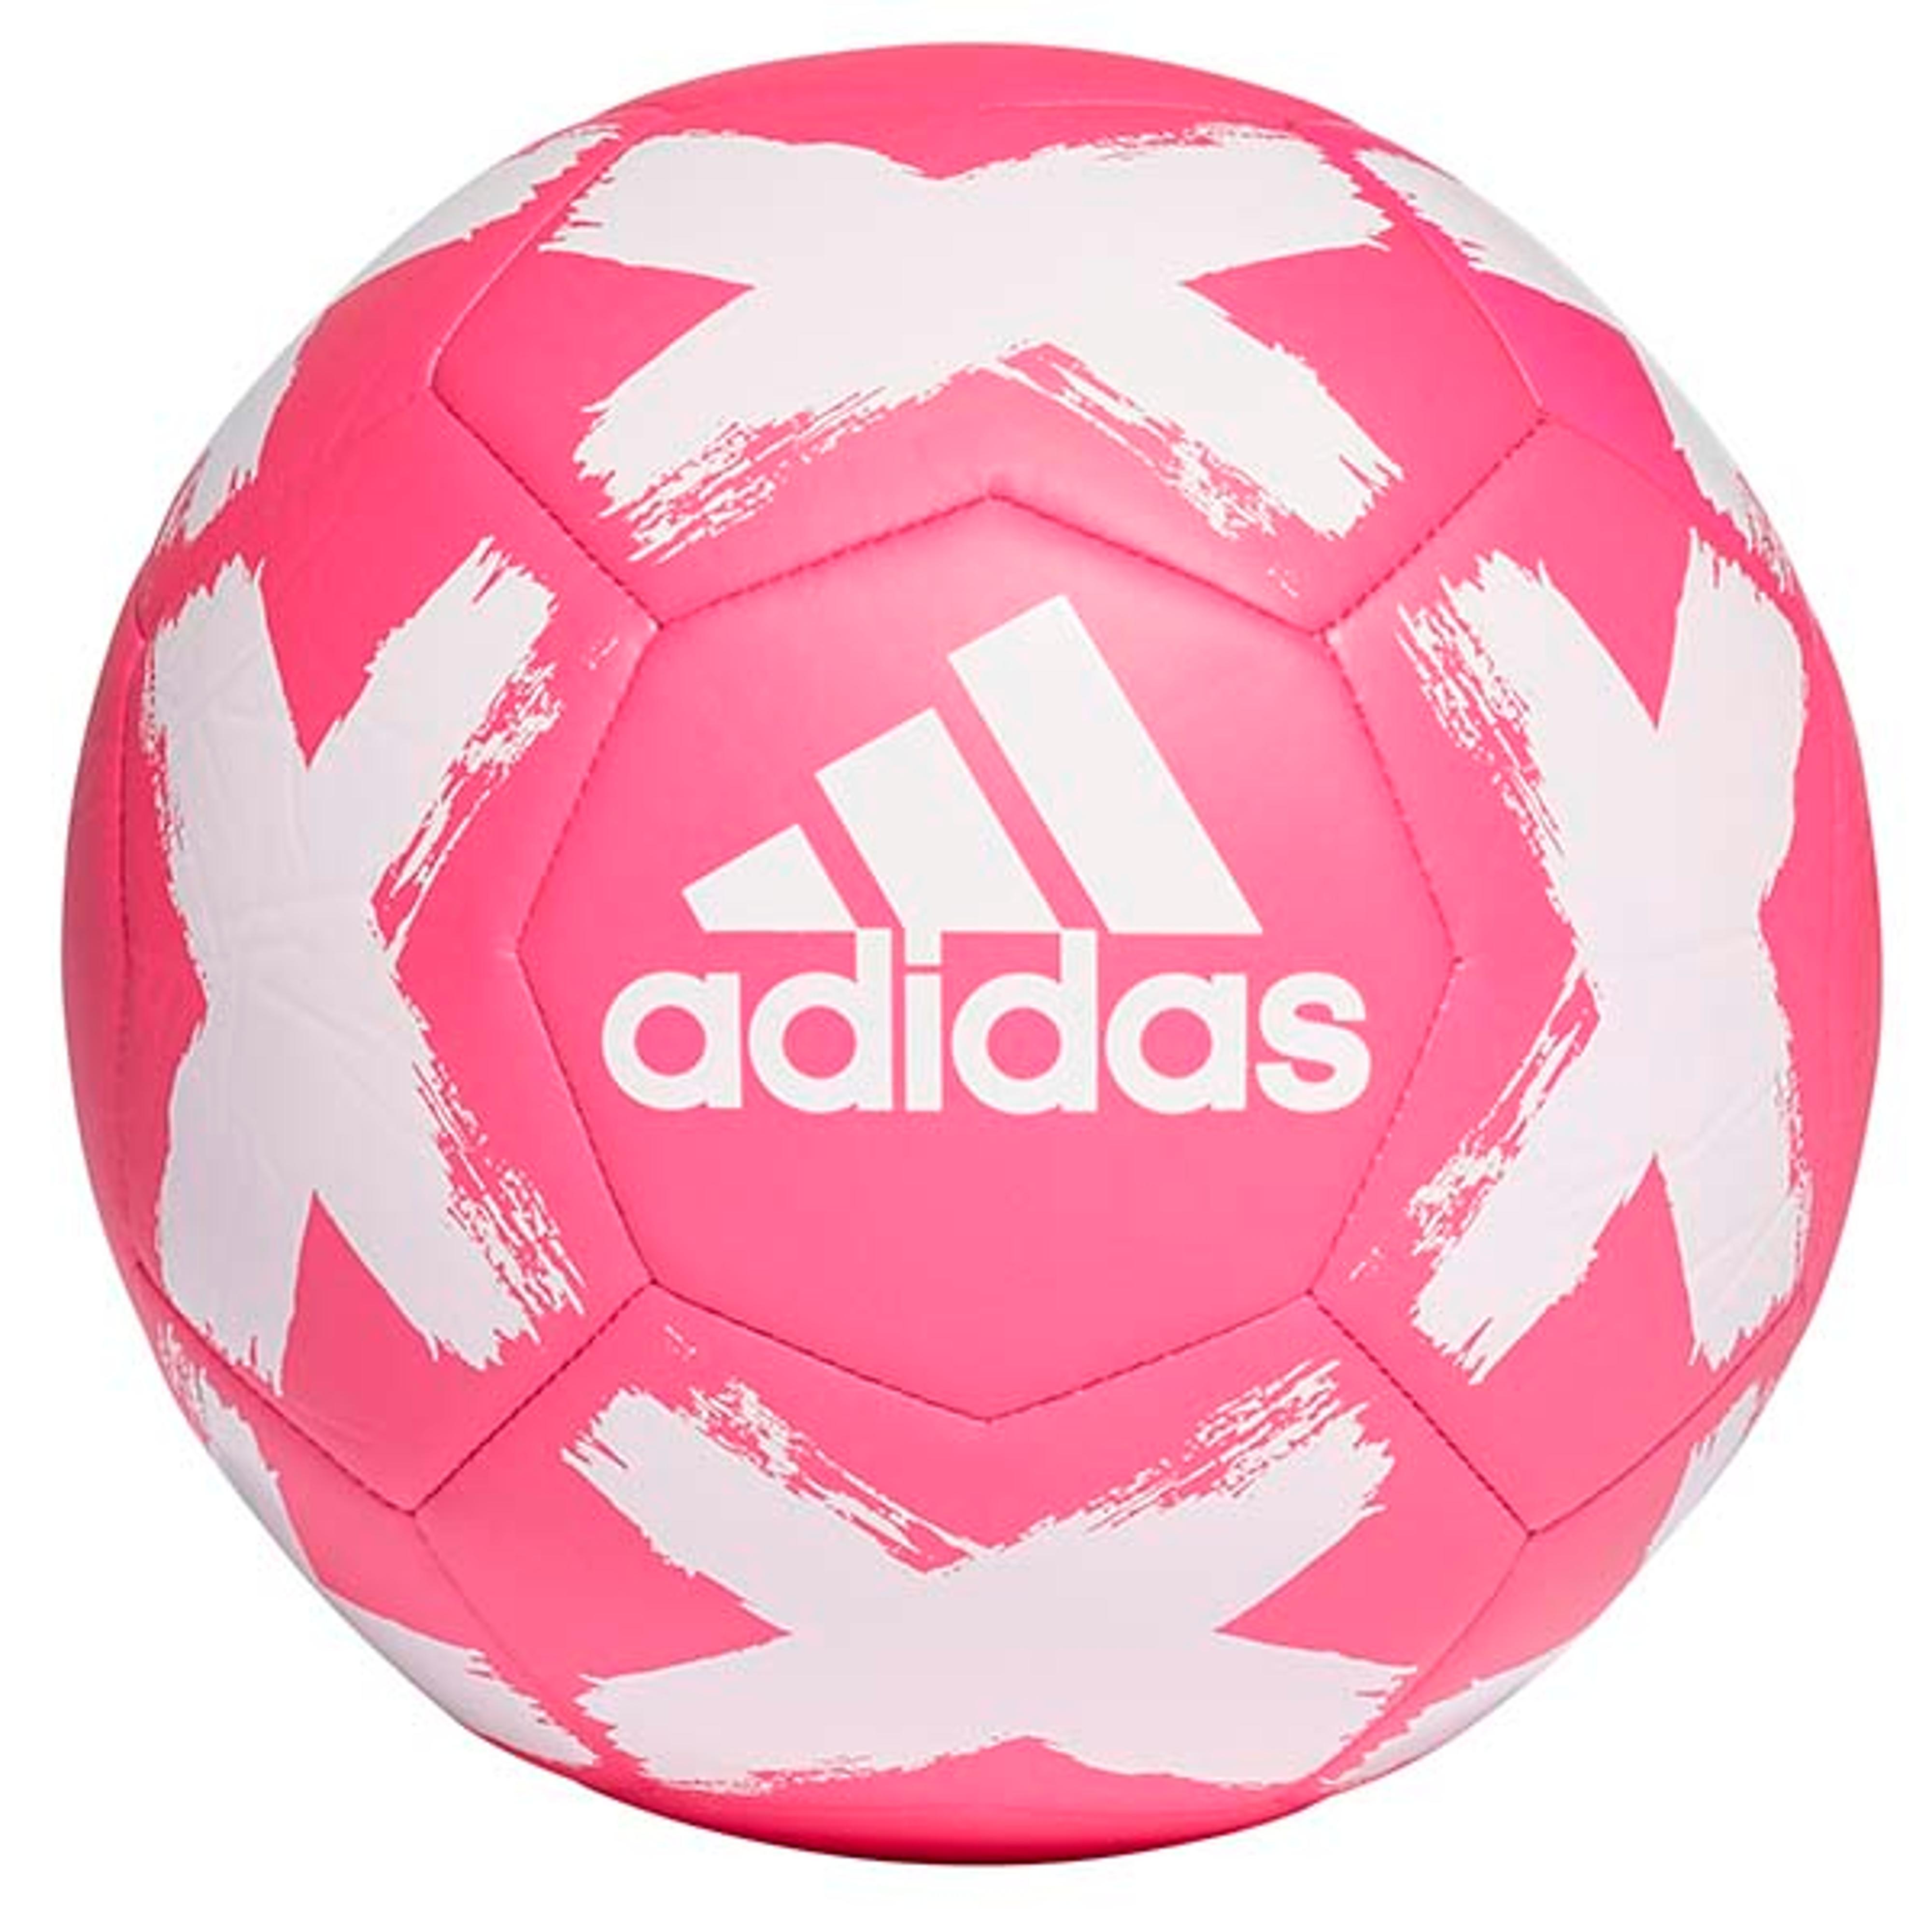 Xara XB1 v5 Soccer Ball